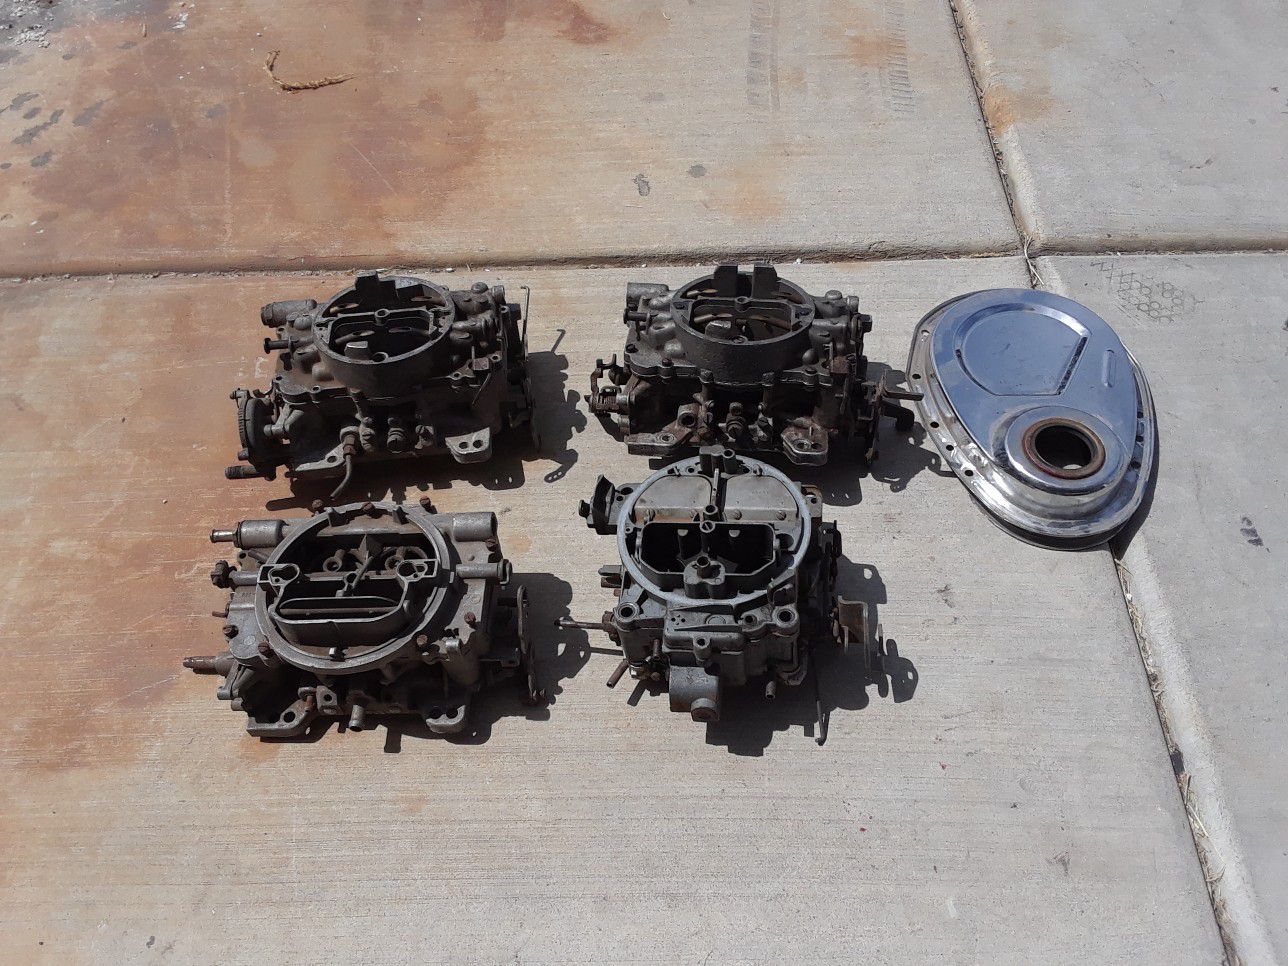 3 AFB carburetors for parts 1 Quadrajet for parts 1 small block Chrome timing cover